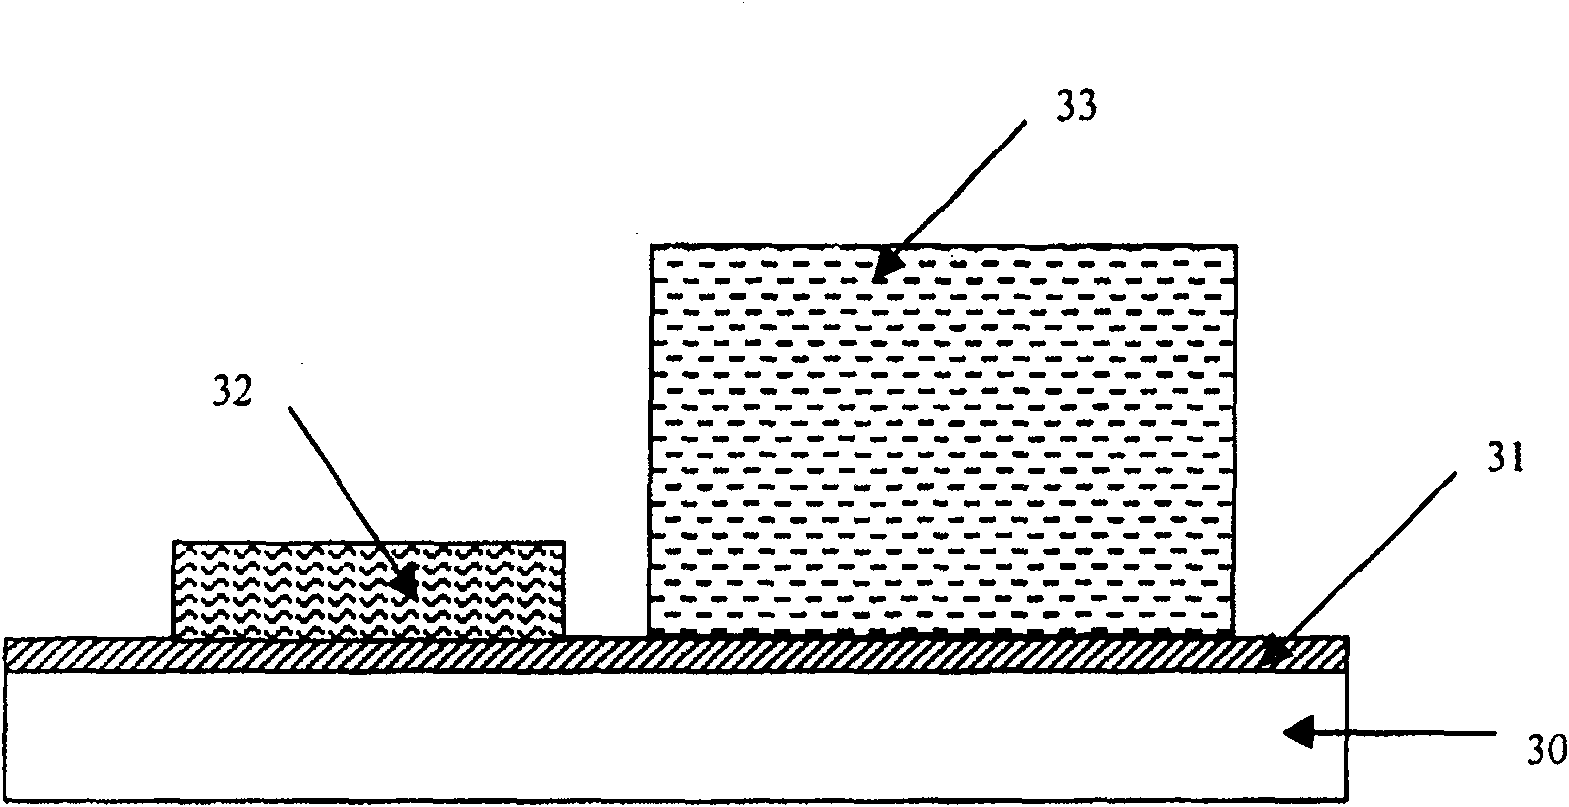 Method for making gallium nitride based laser tube core using face-down bonding technique